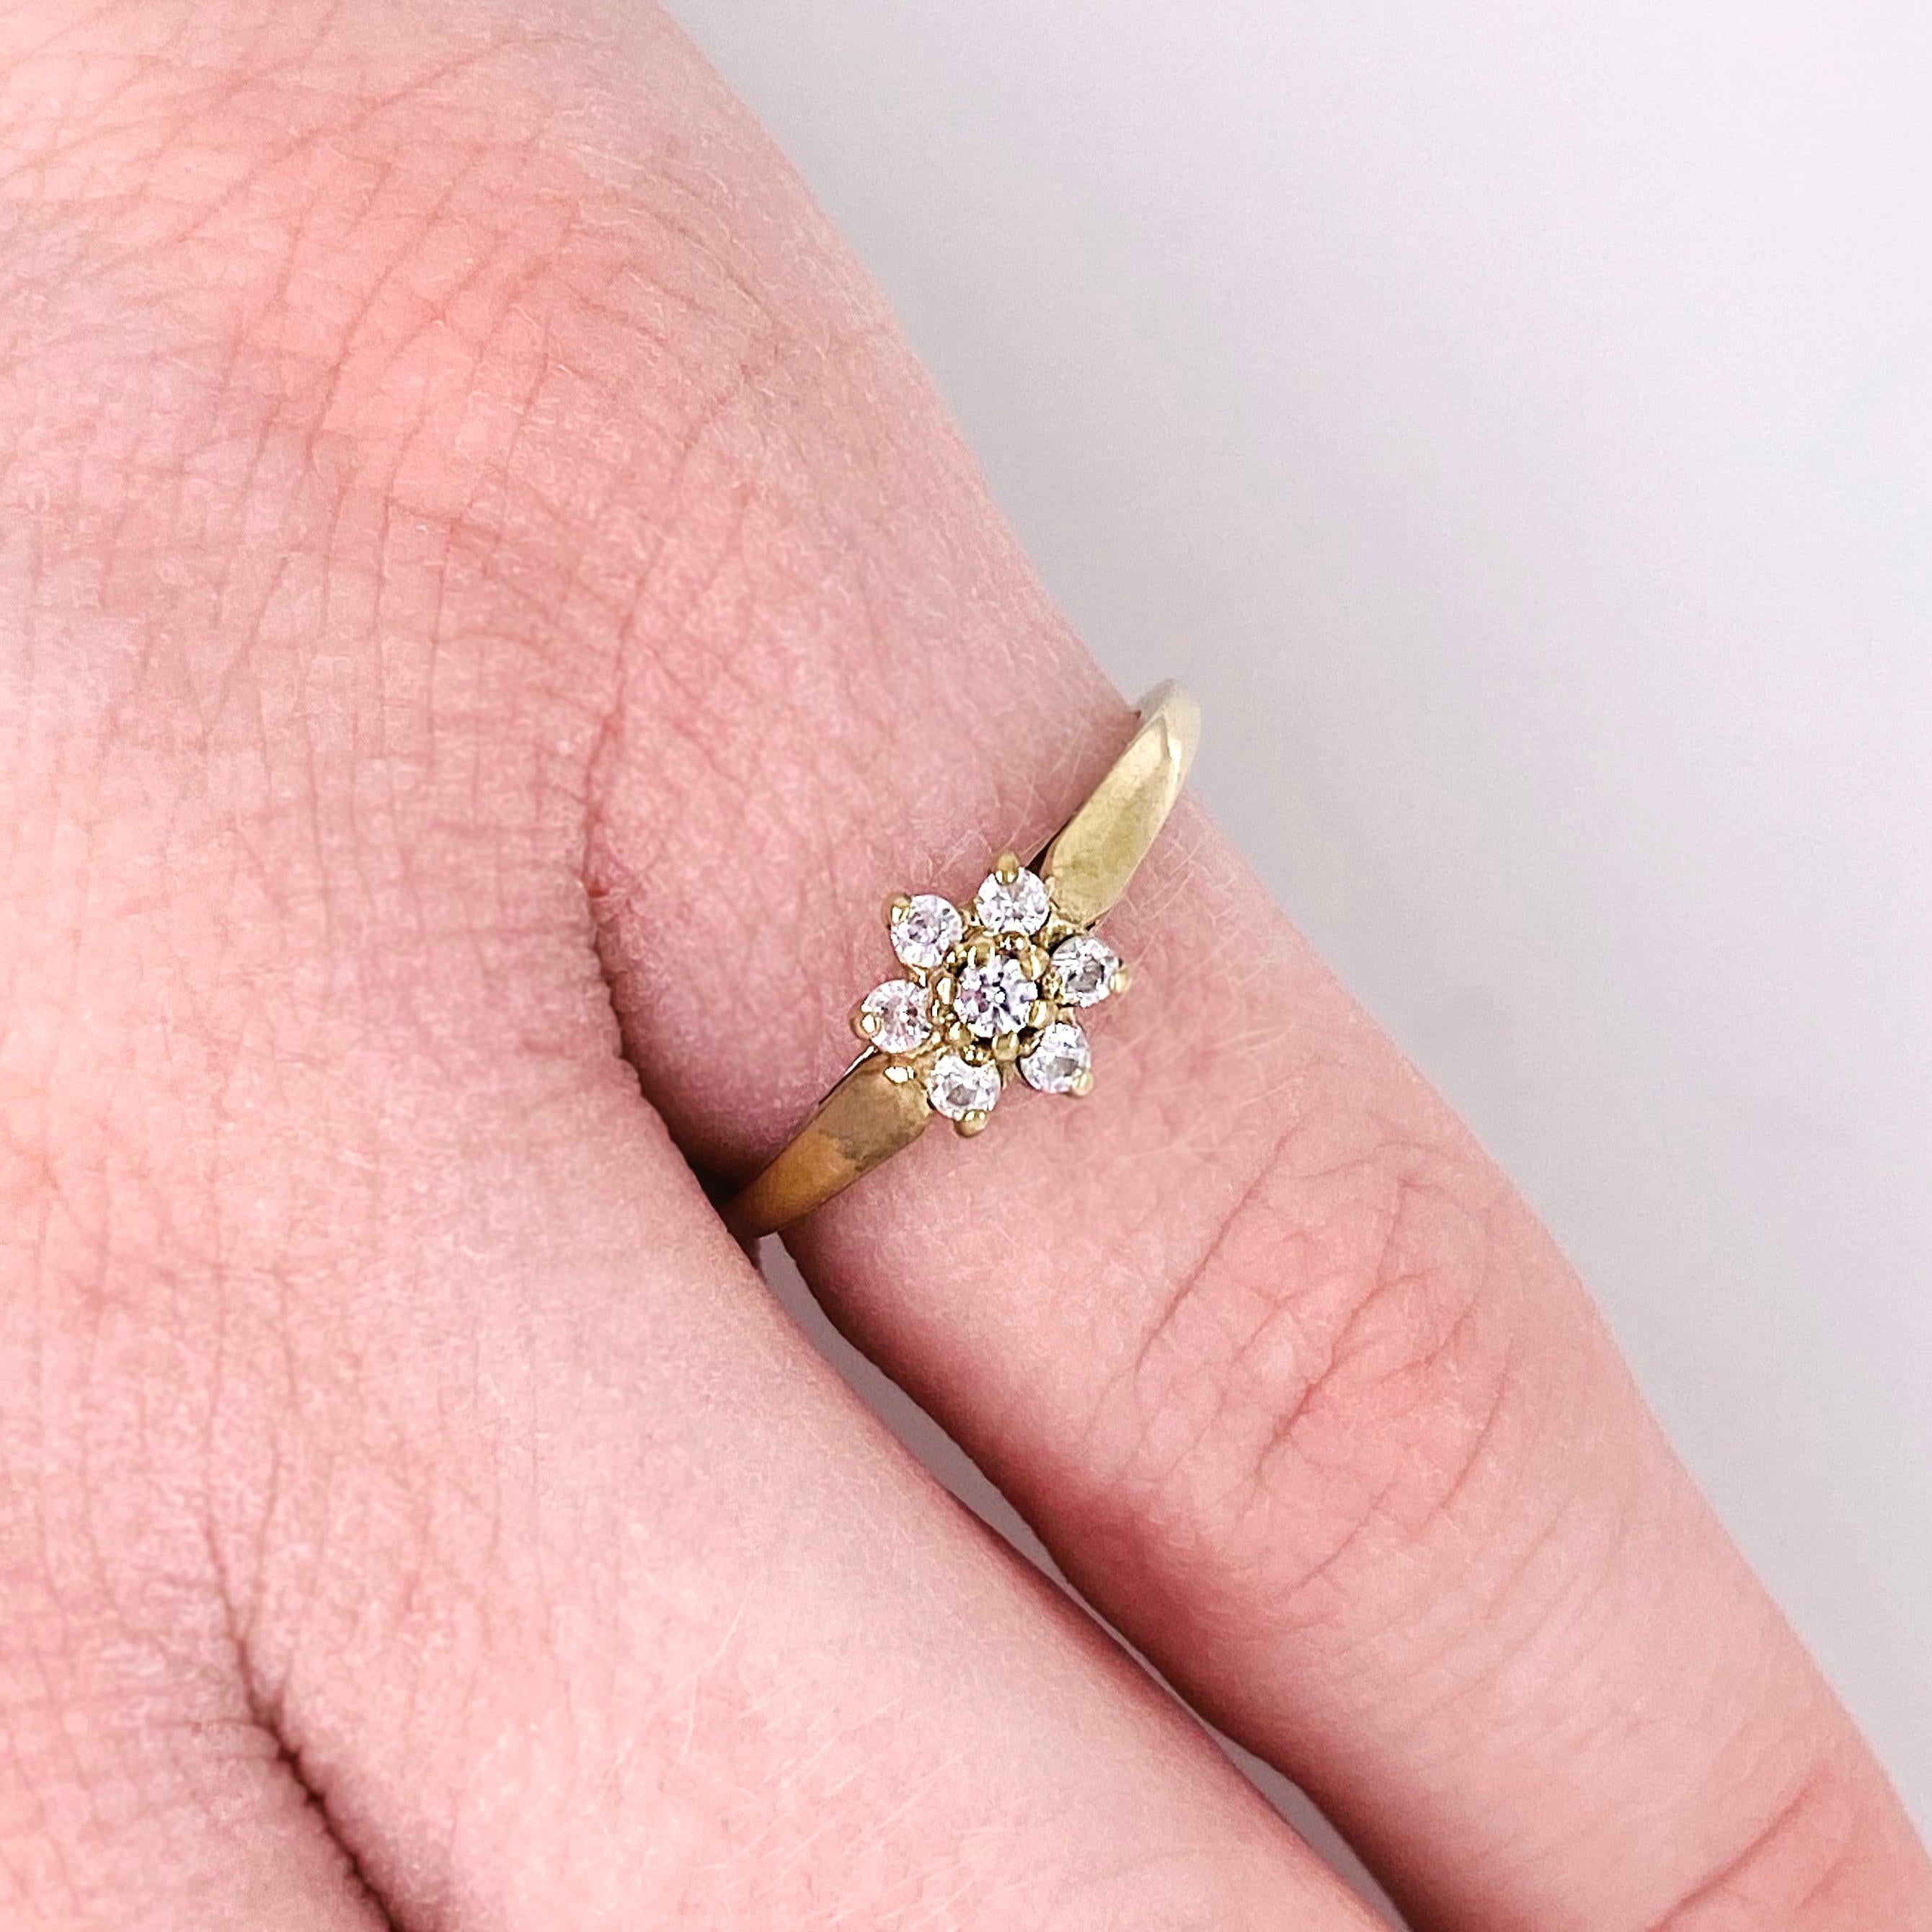 Der kostbare Ring mit natürlicher Diamantblüte hat ein Blumendesign, das aus echten, natürlichen, runden Diamantblättern